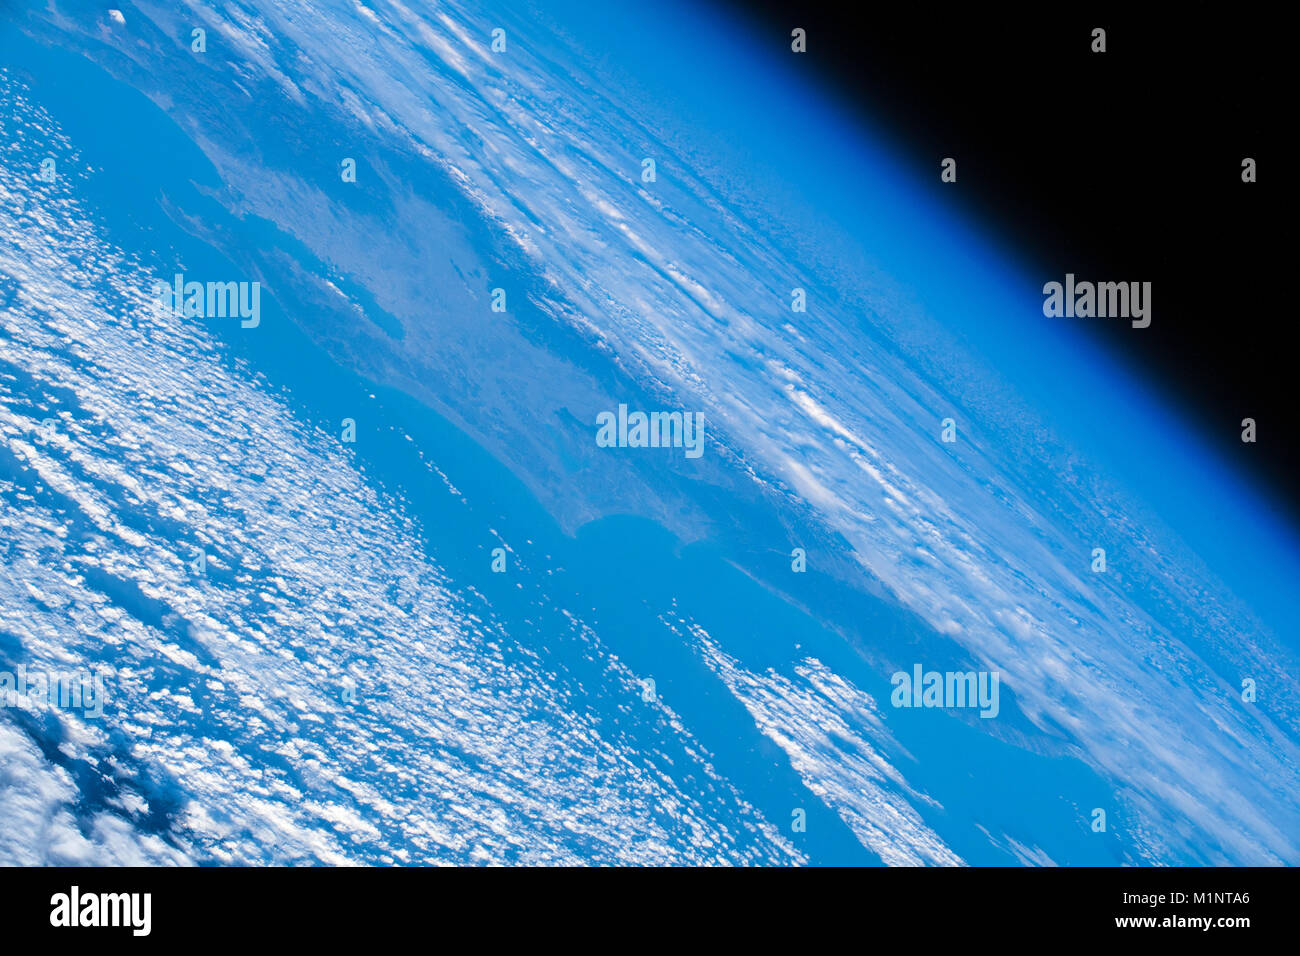 Cerca del borde del planeta Tierra. Contraste de la maravilla azul y blanco contra el fondo oscuro del espacio. Esta imagen elementos proporcionados por la NASA Foto de stock